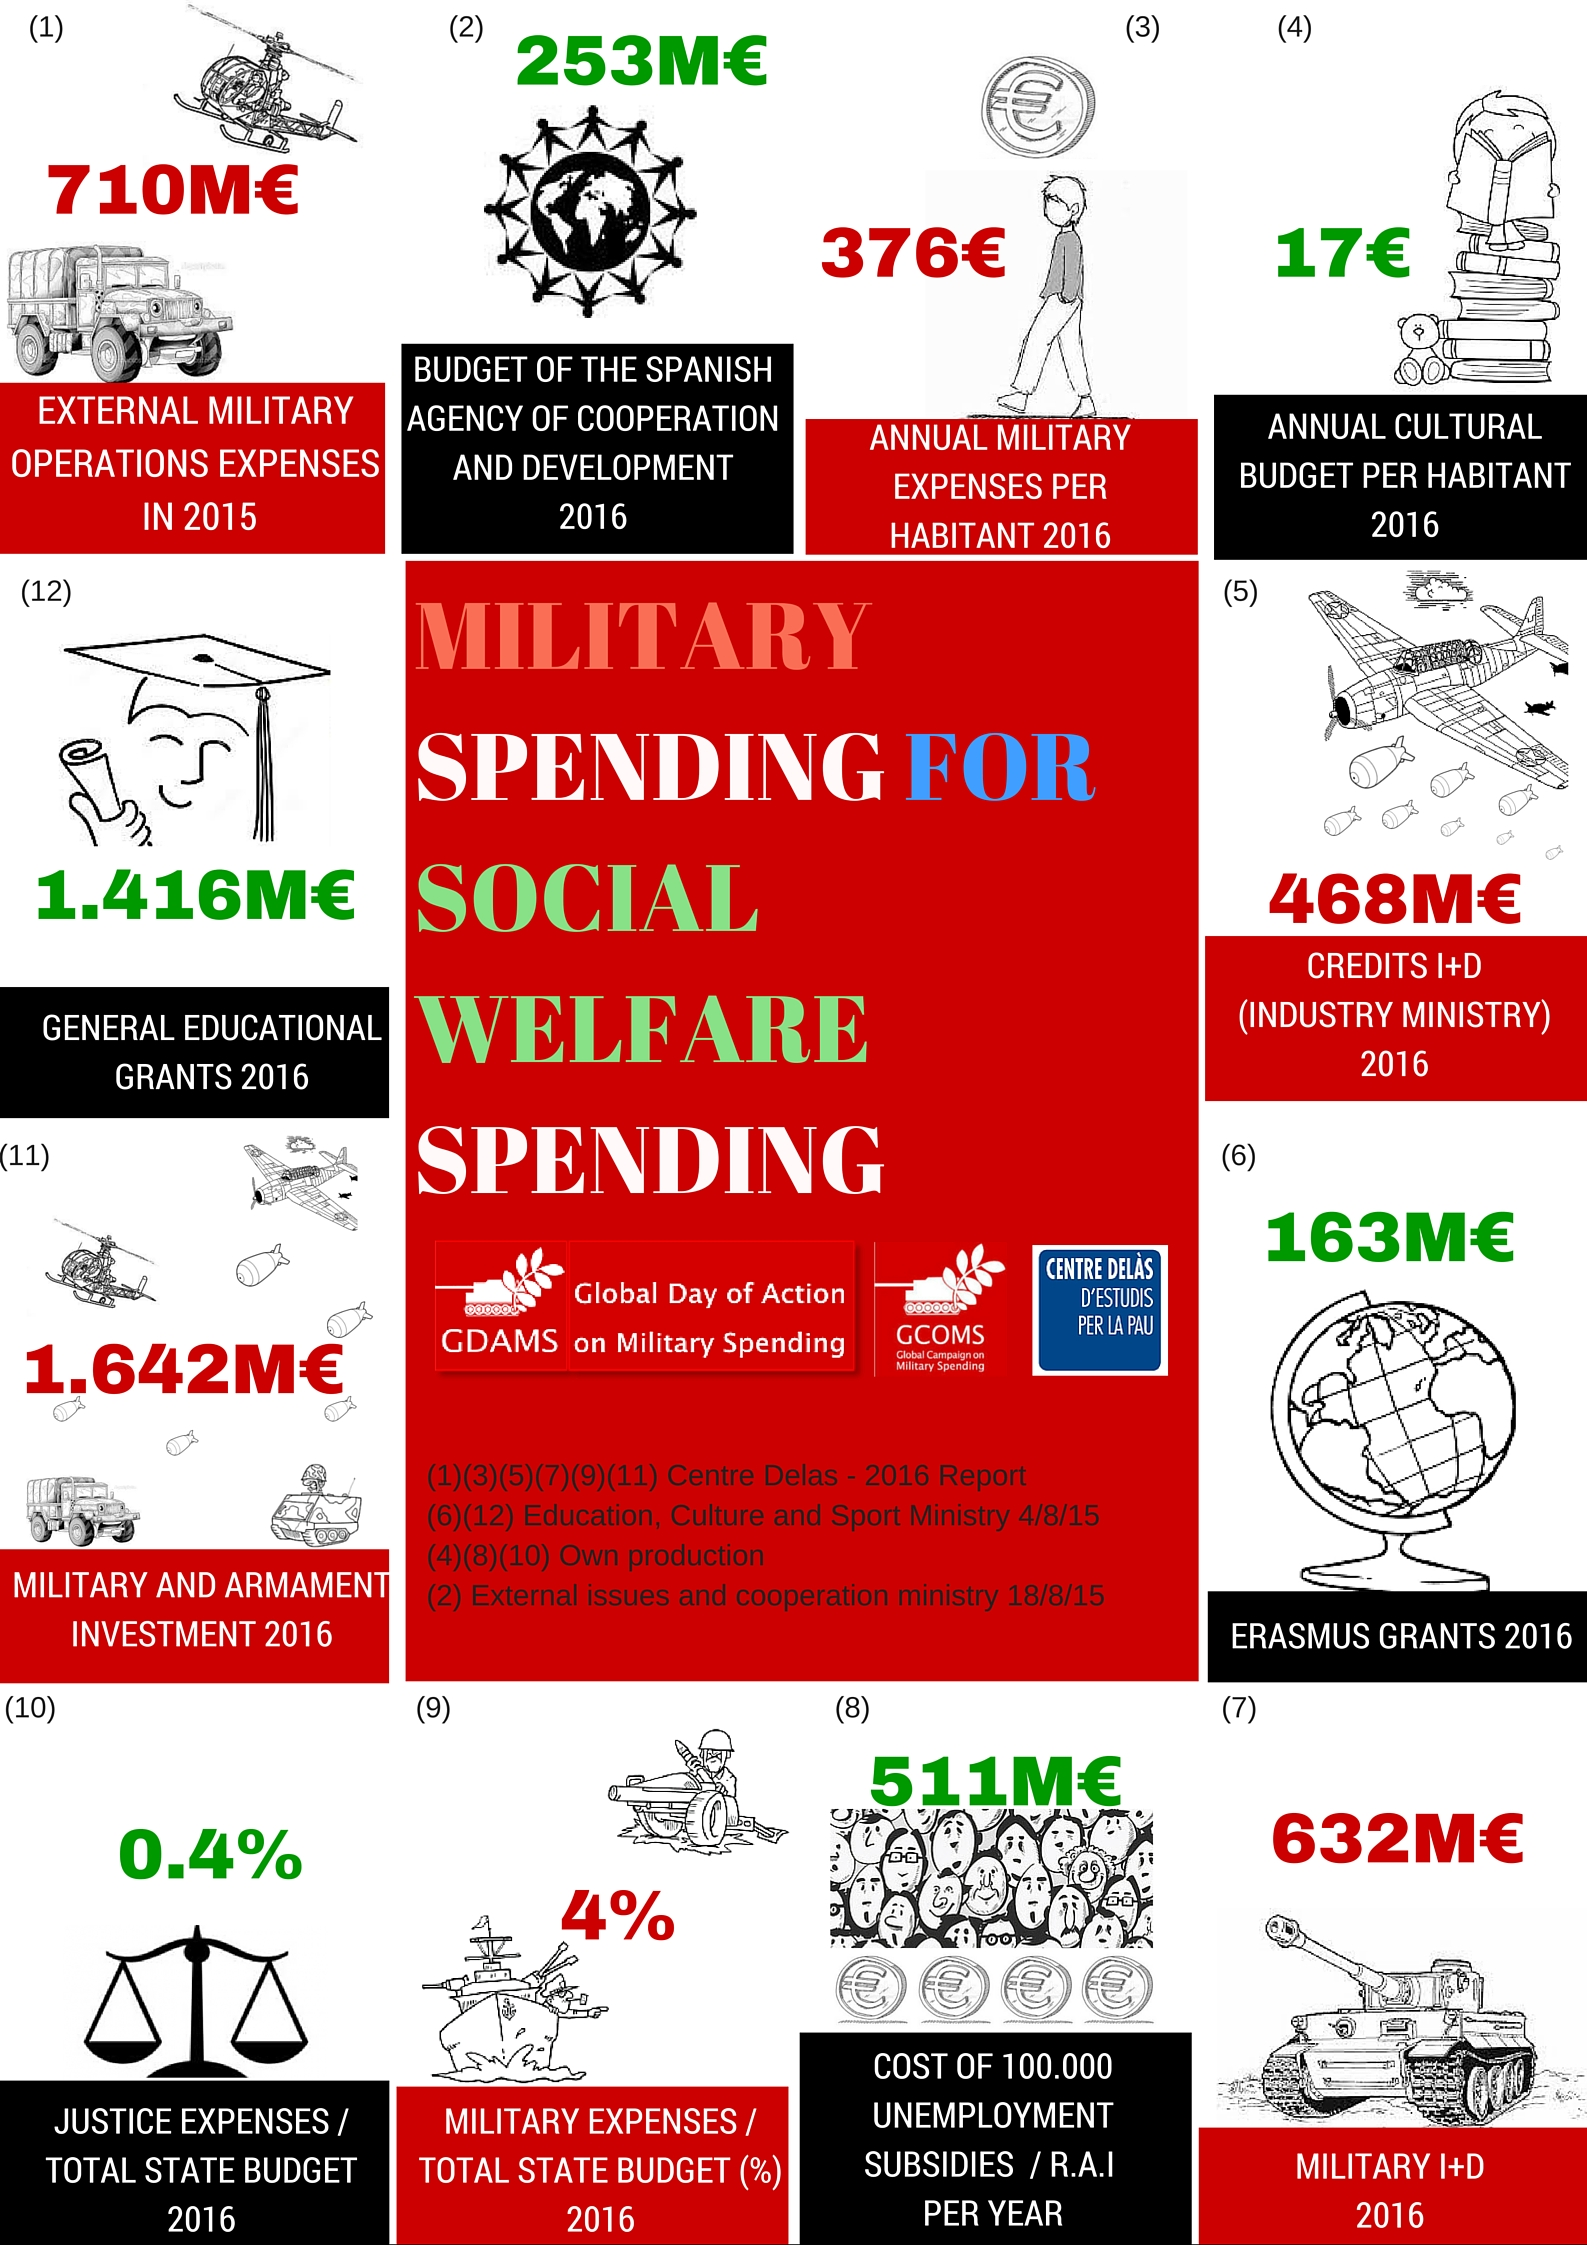 Military spending for social welfare spending 2016